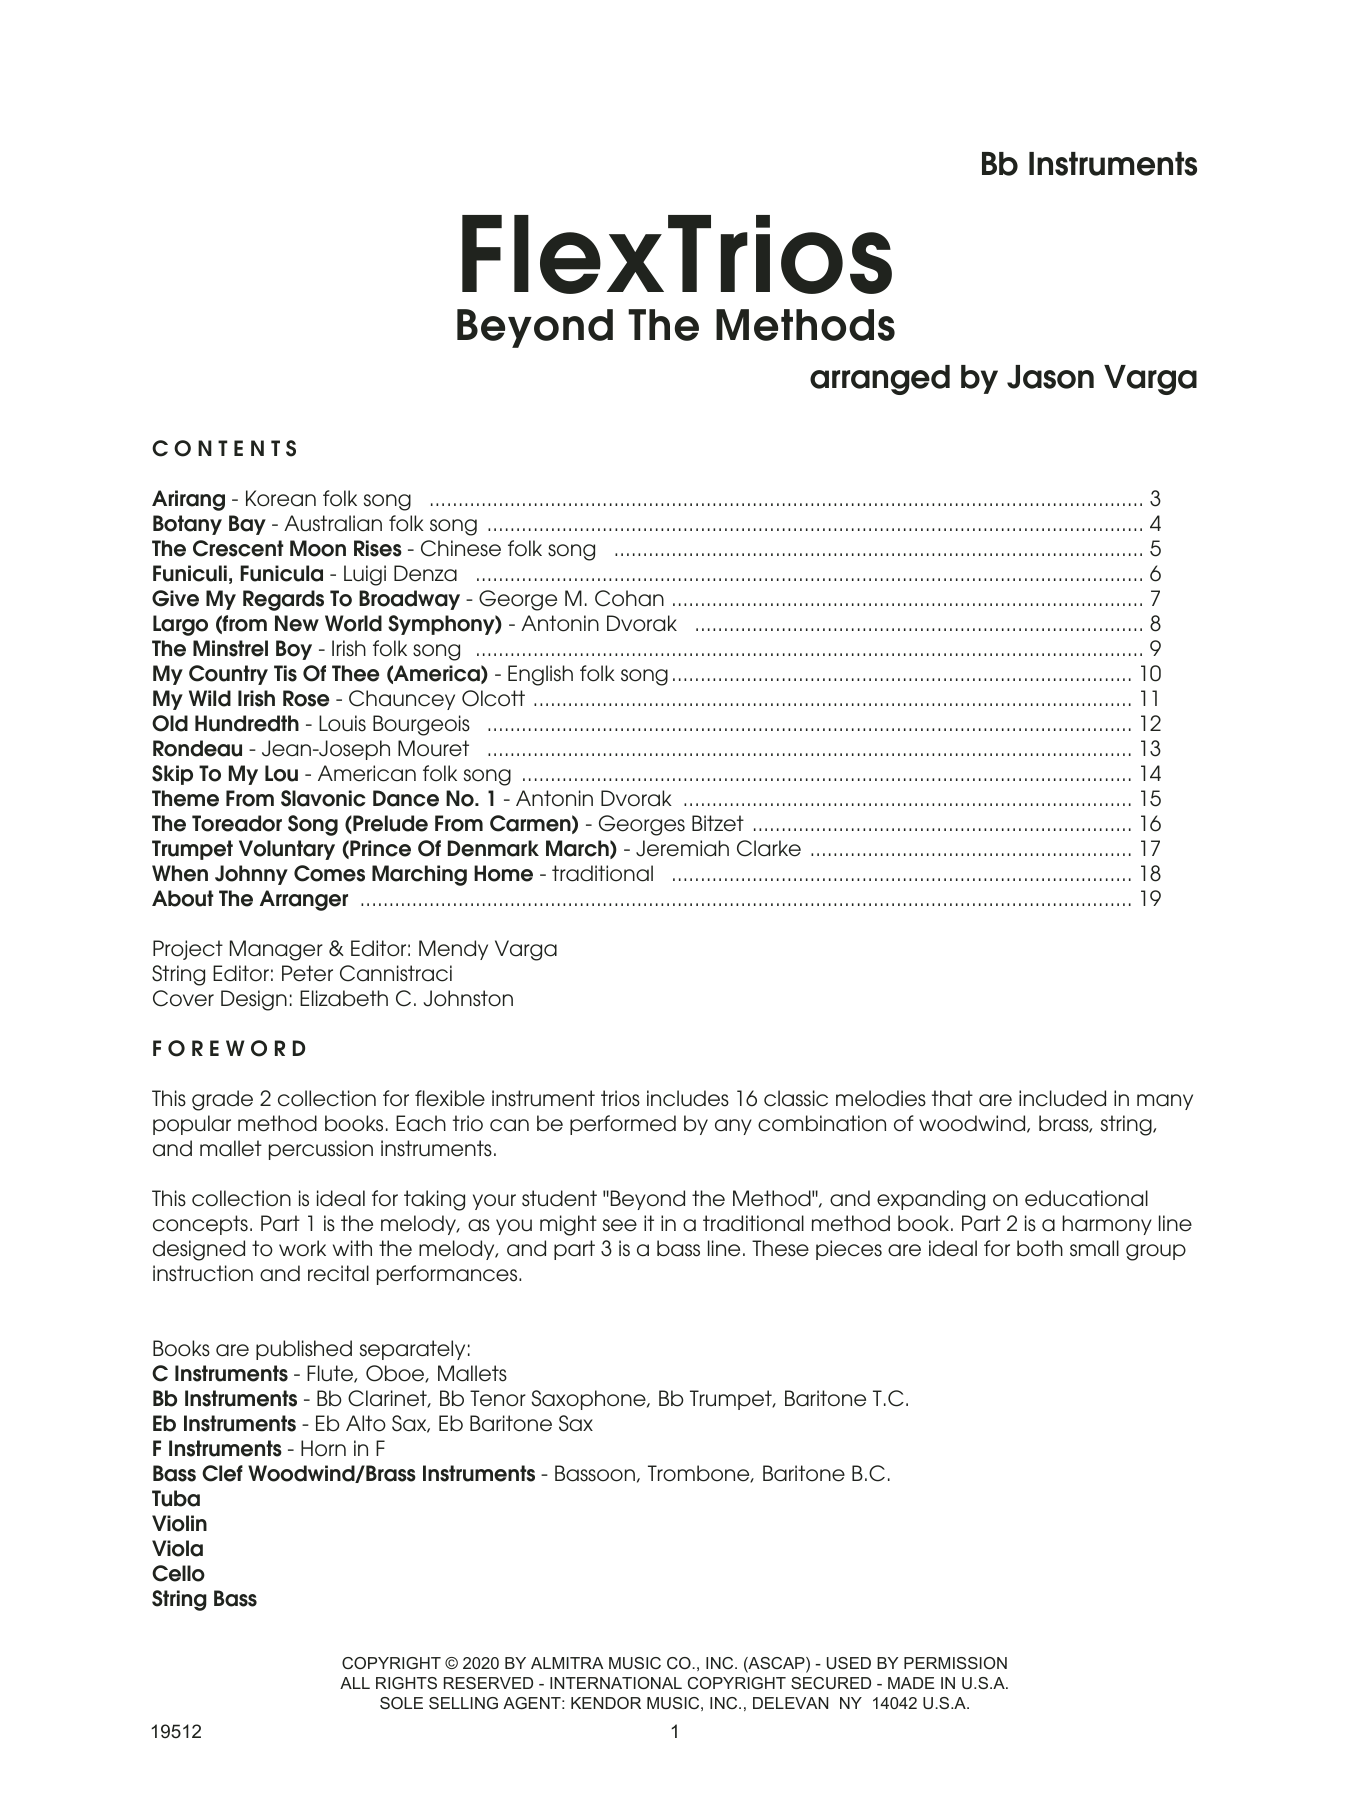 Download Jason Varga Flextrios - Beyond The Methods (16 Piec Sheet Music